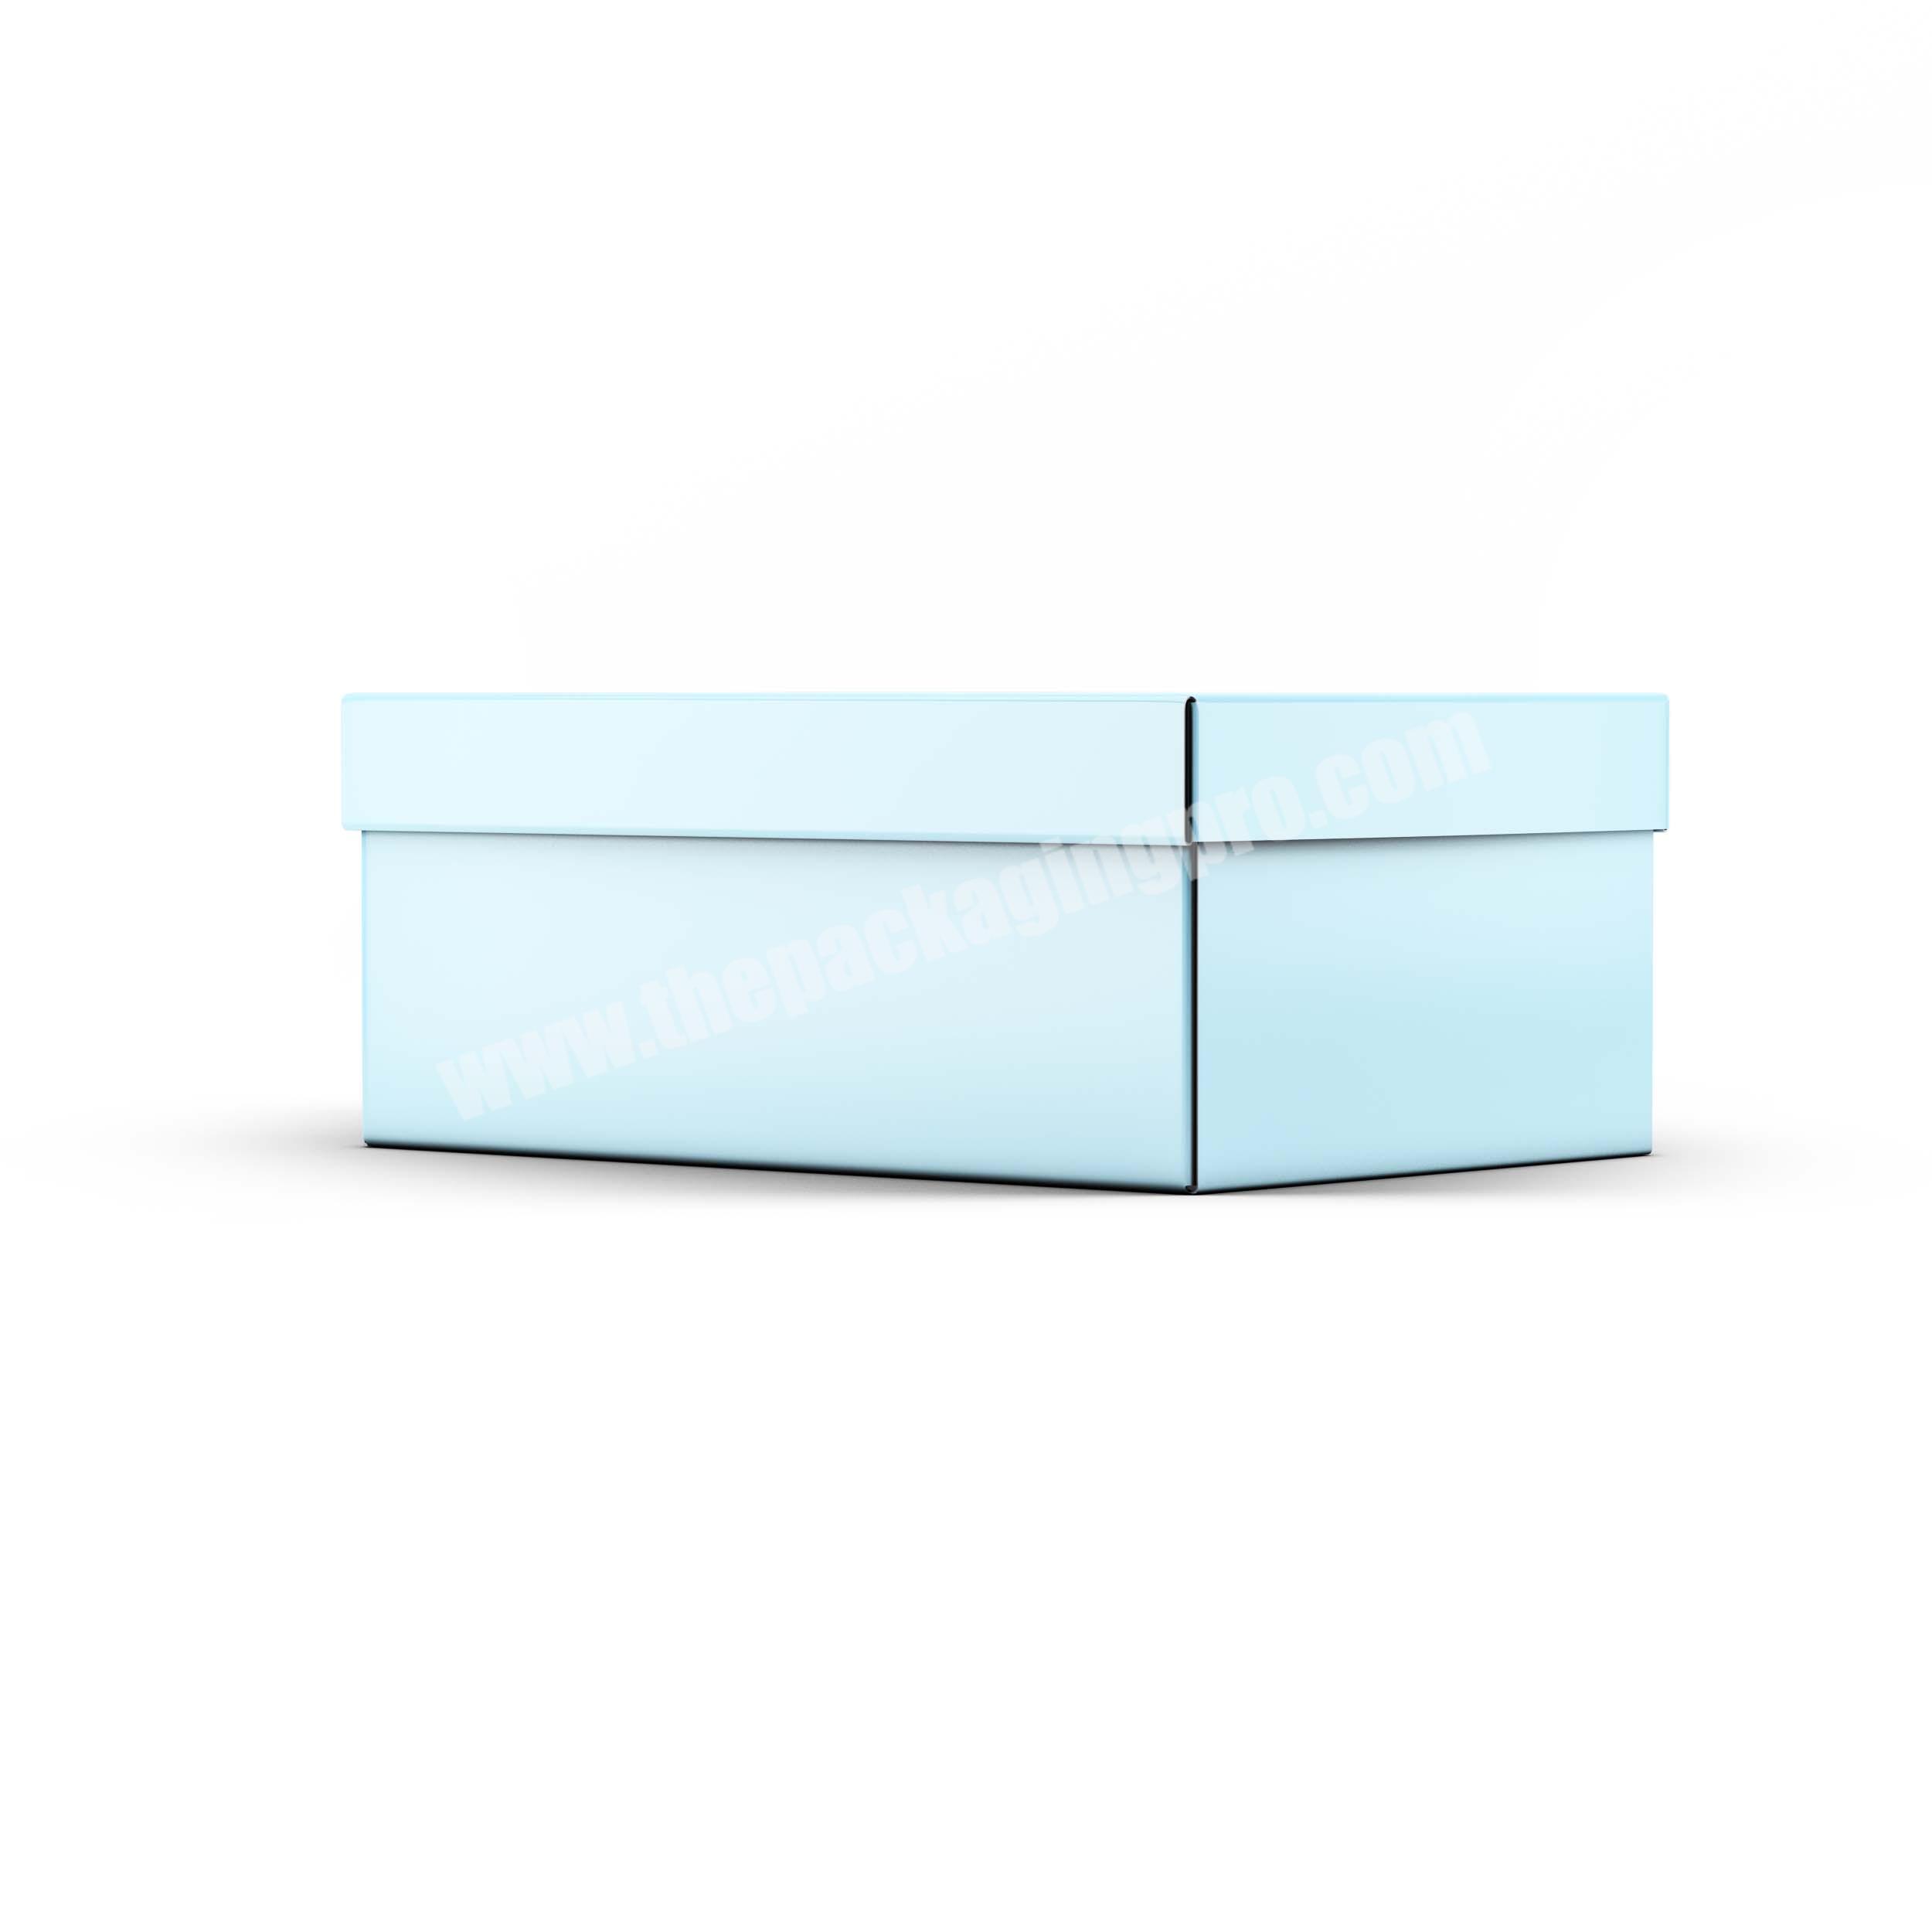 Large karton folding shoe box foldable rectanglg carton package box